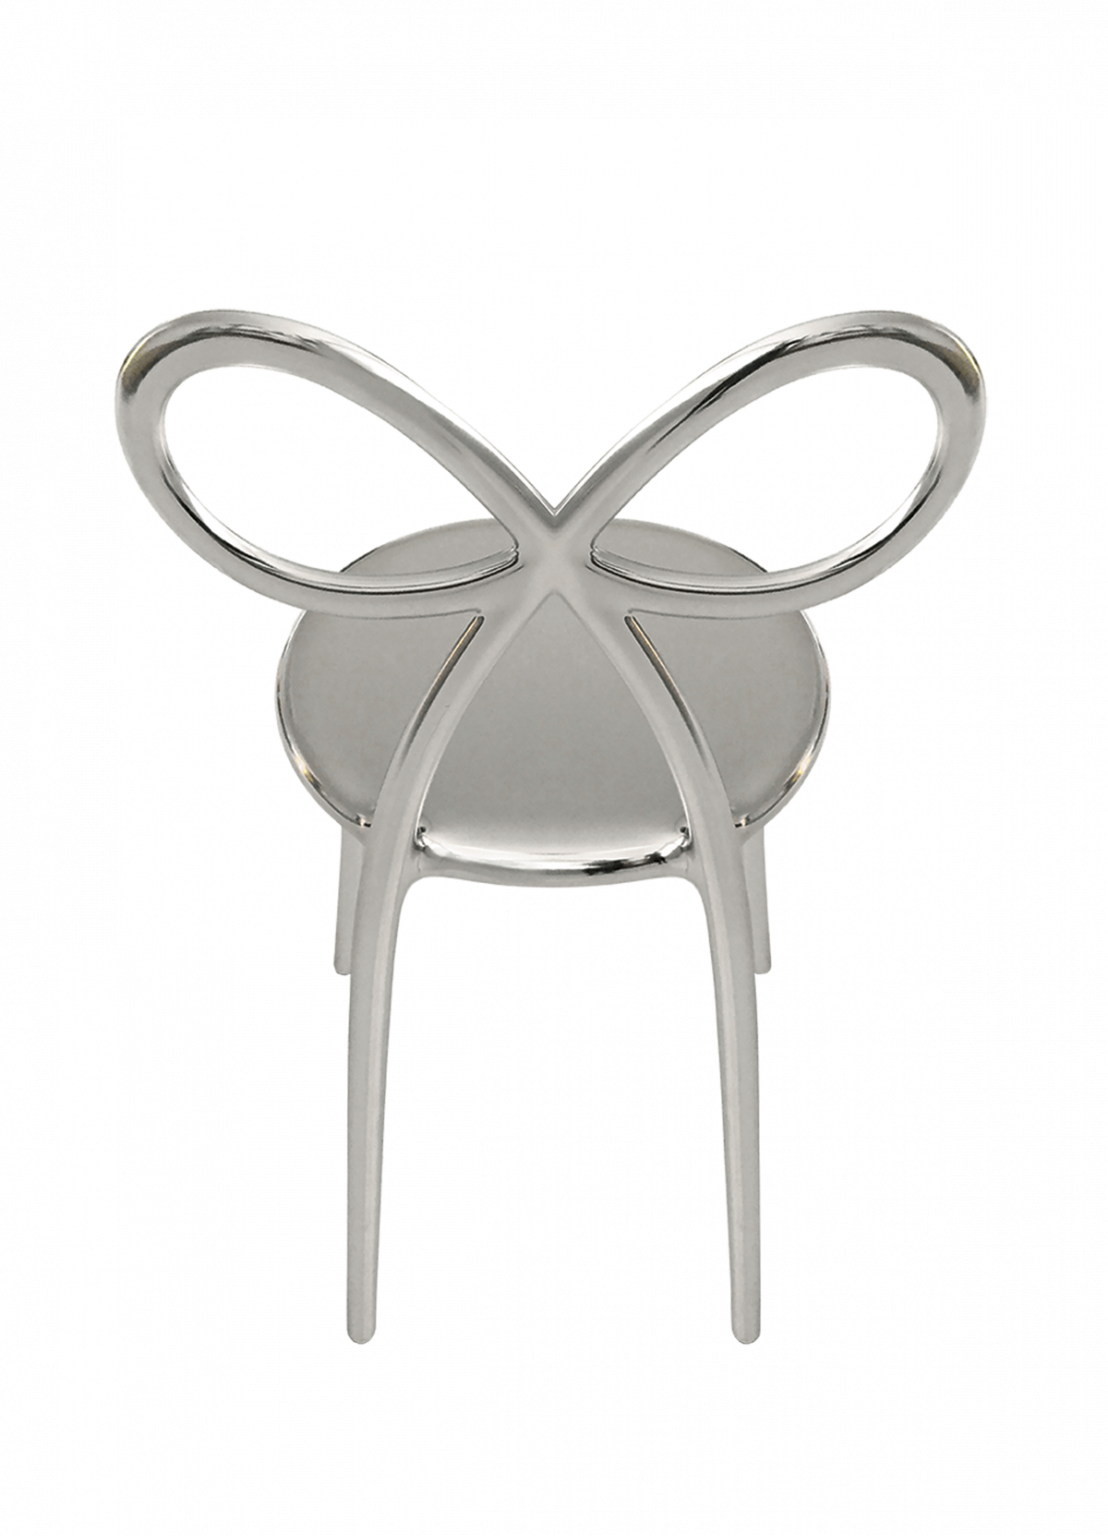 Zestaw 2 krzeseł Ribbon metalowych srebrnych